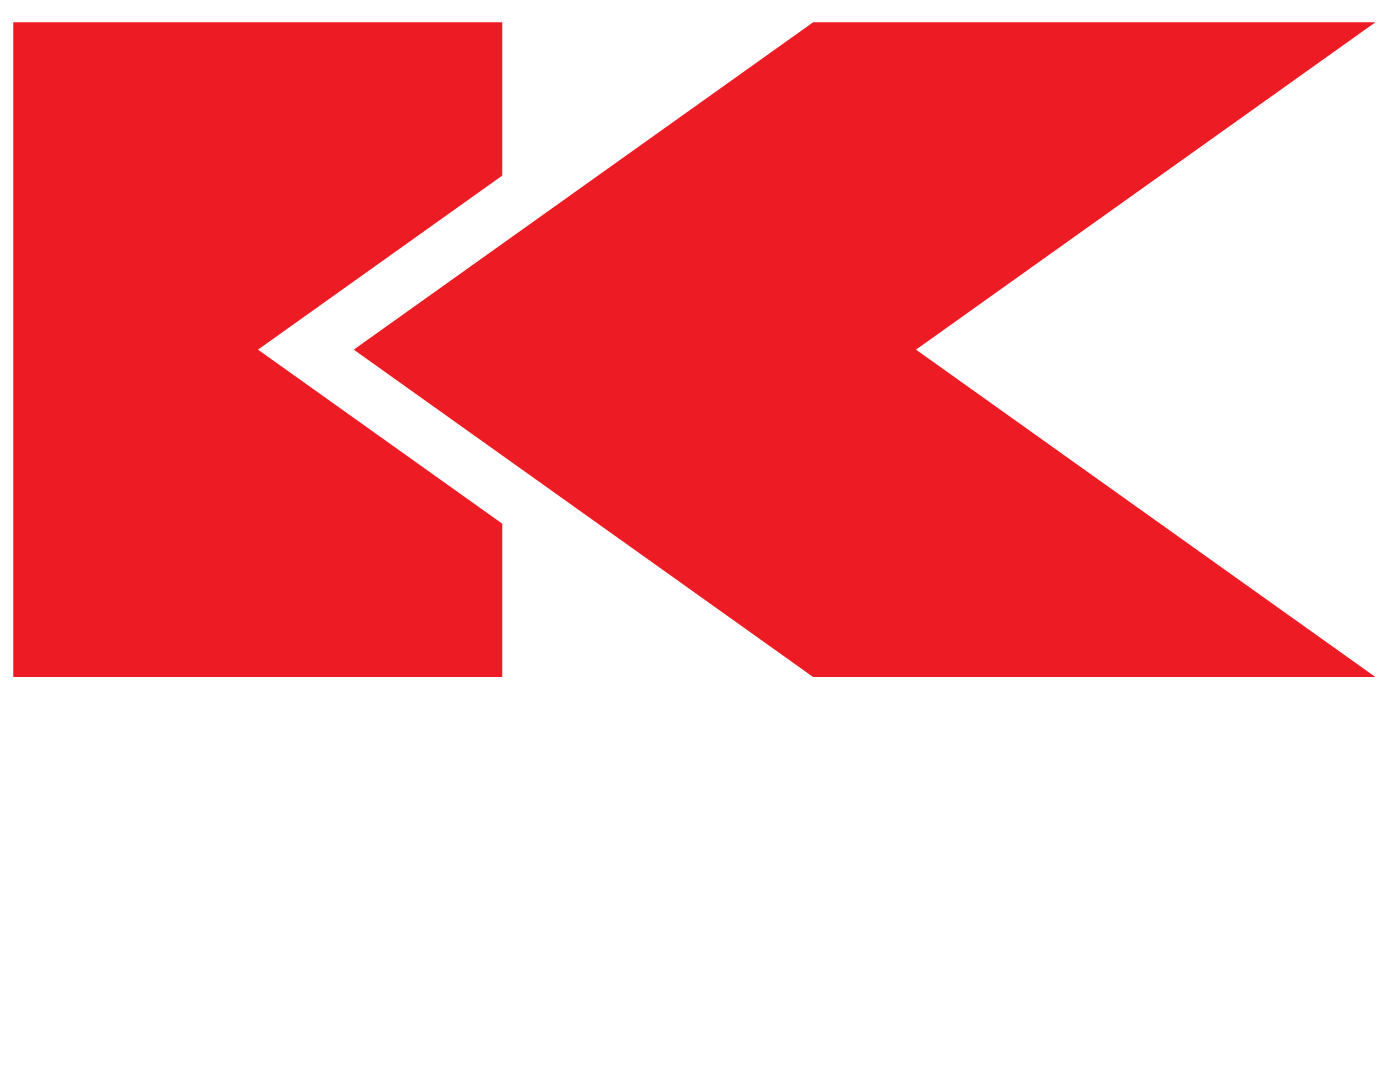 Kingston Plant Hire